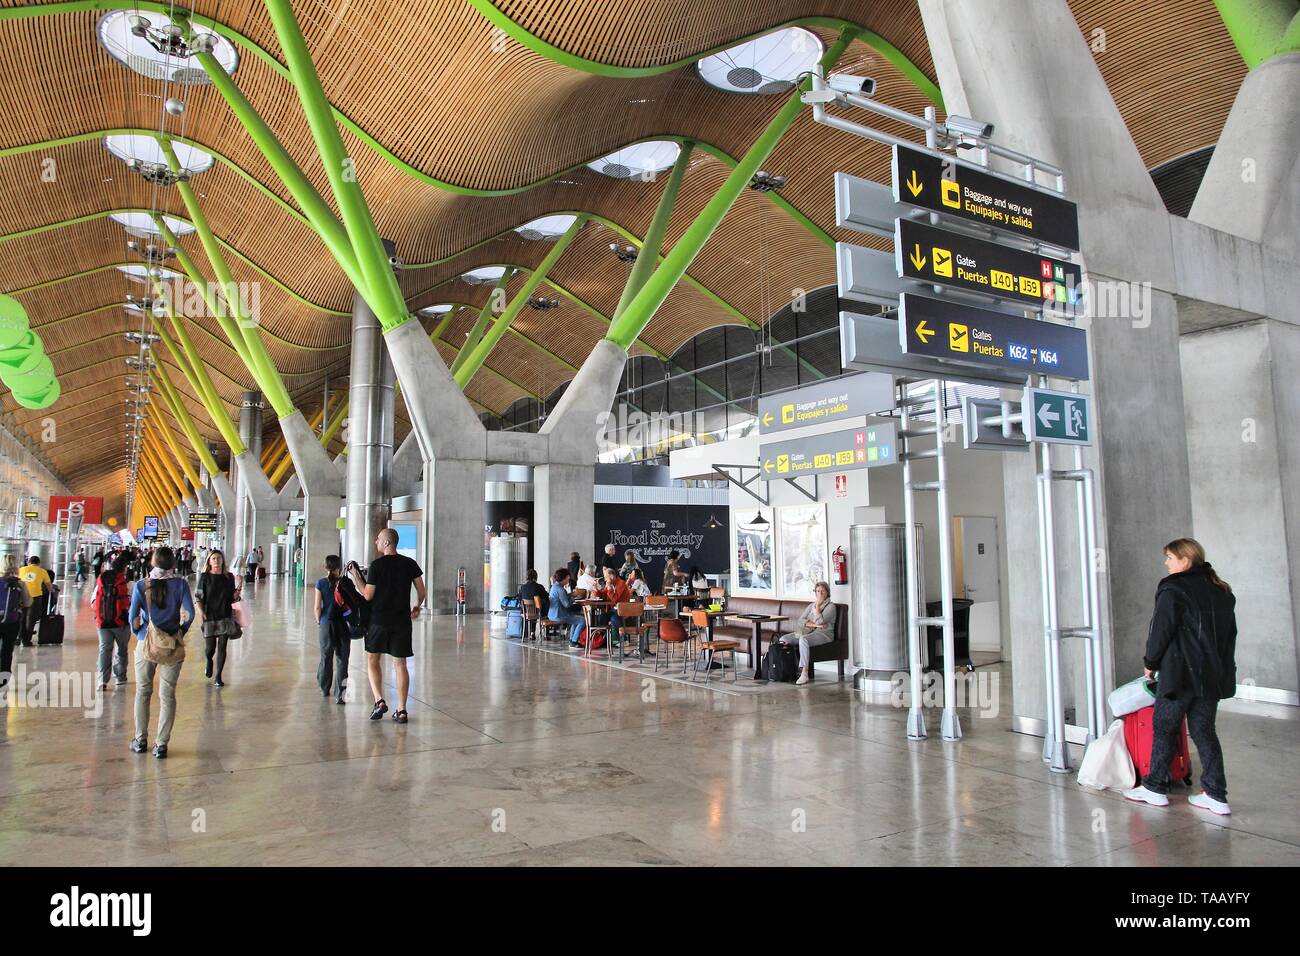 MADRID, Spanien - 5. OKTOBER 2014: Passagiere besuchen Sie Stift 4 am Flughafen Madrid Barajas entfernt. Die berühmten Terminal 4 wurde von Antonio Lamela und Richa konzipiert Stockfoto